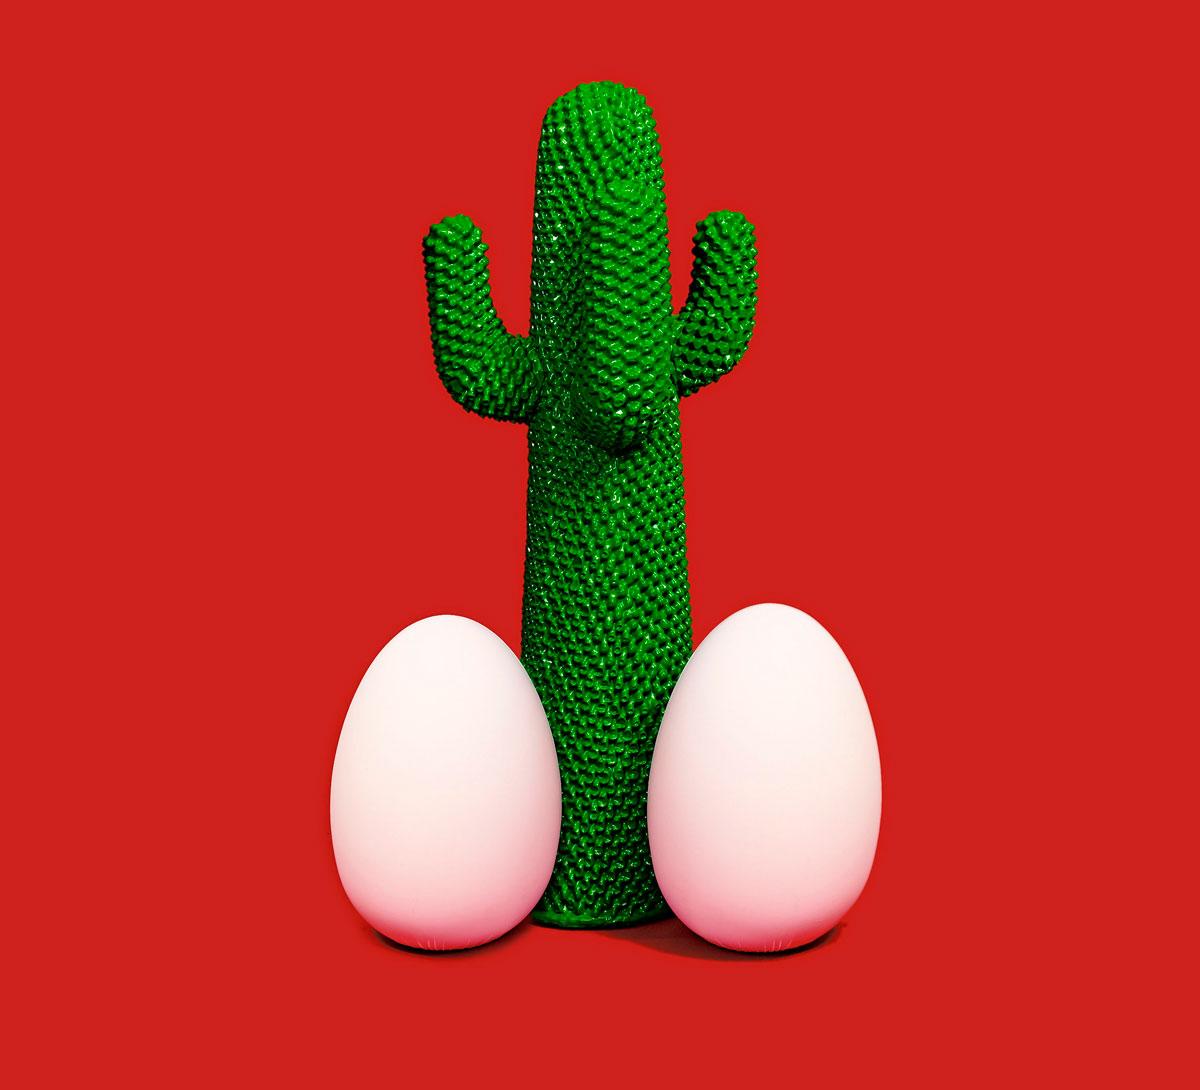 Maurizio Cattelan Figurative Sculpture - Cactus God